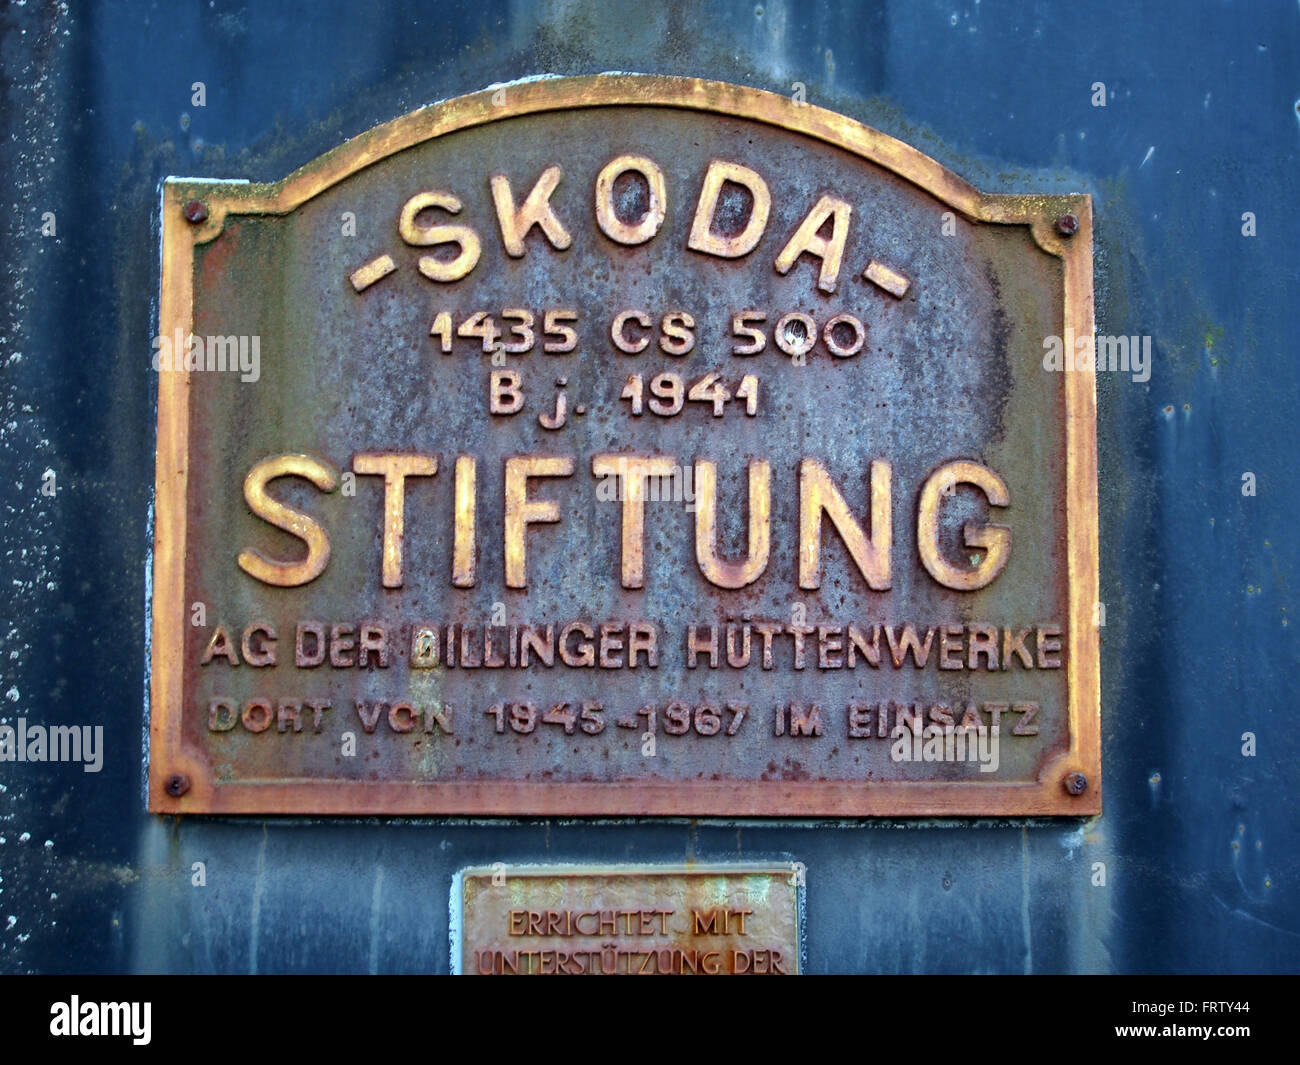 SKODA 1435 CS 500 1941 Stiftung AG der Dillinger Hüttenwerke am Bhf Bundenthal-Rumbach, Bild 1 Stock Photo